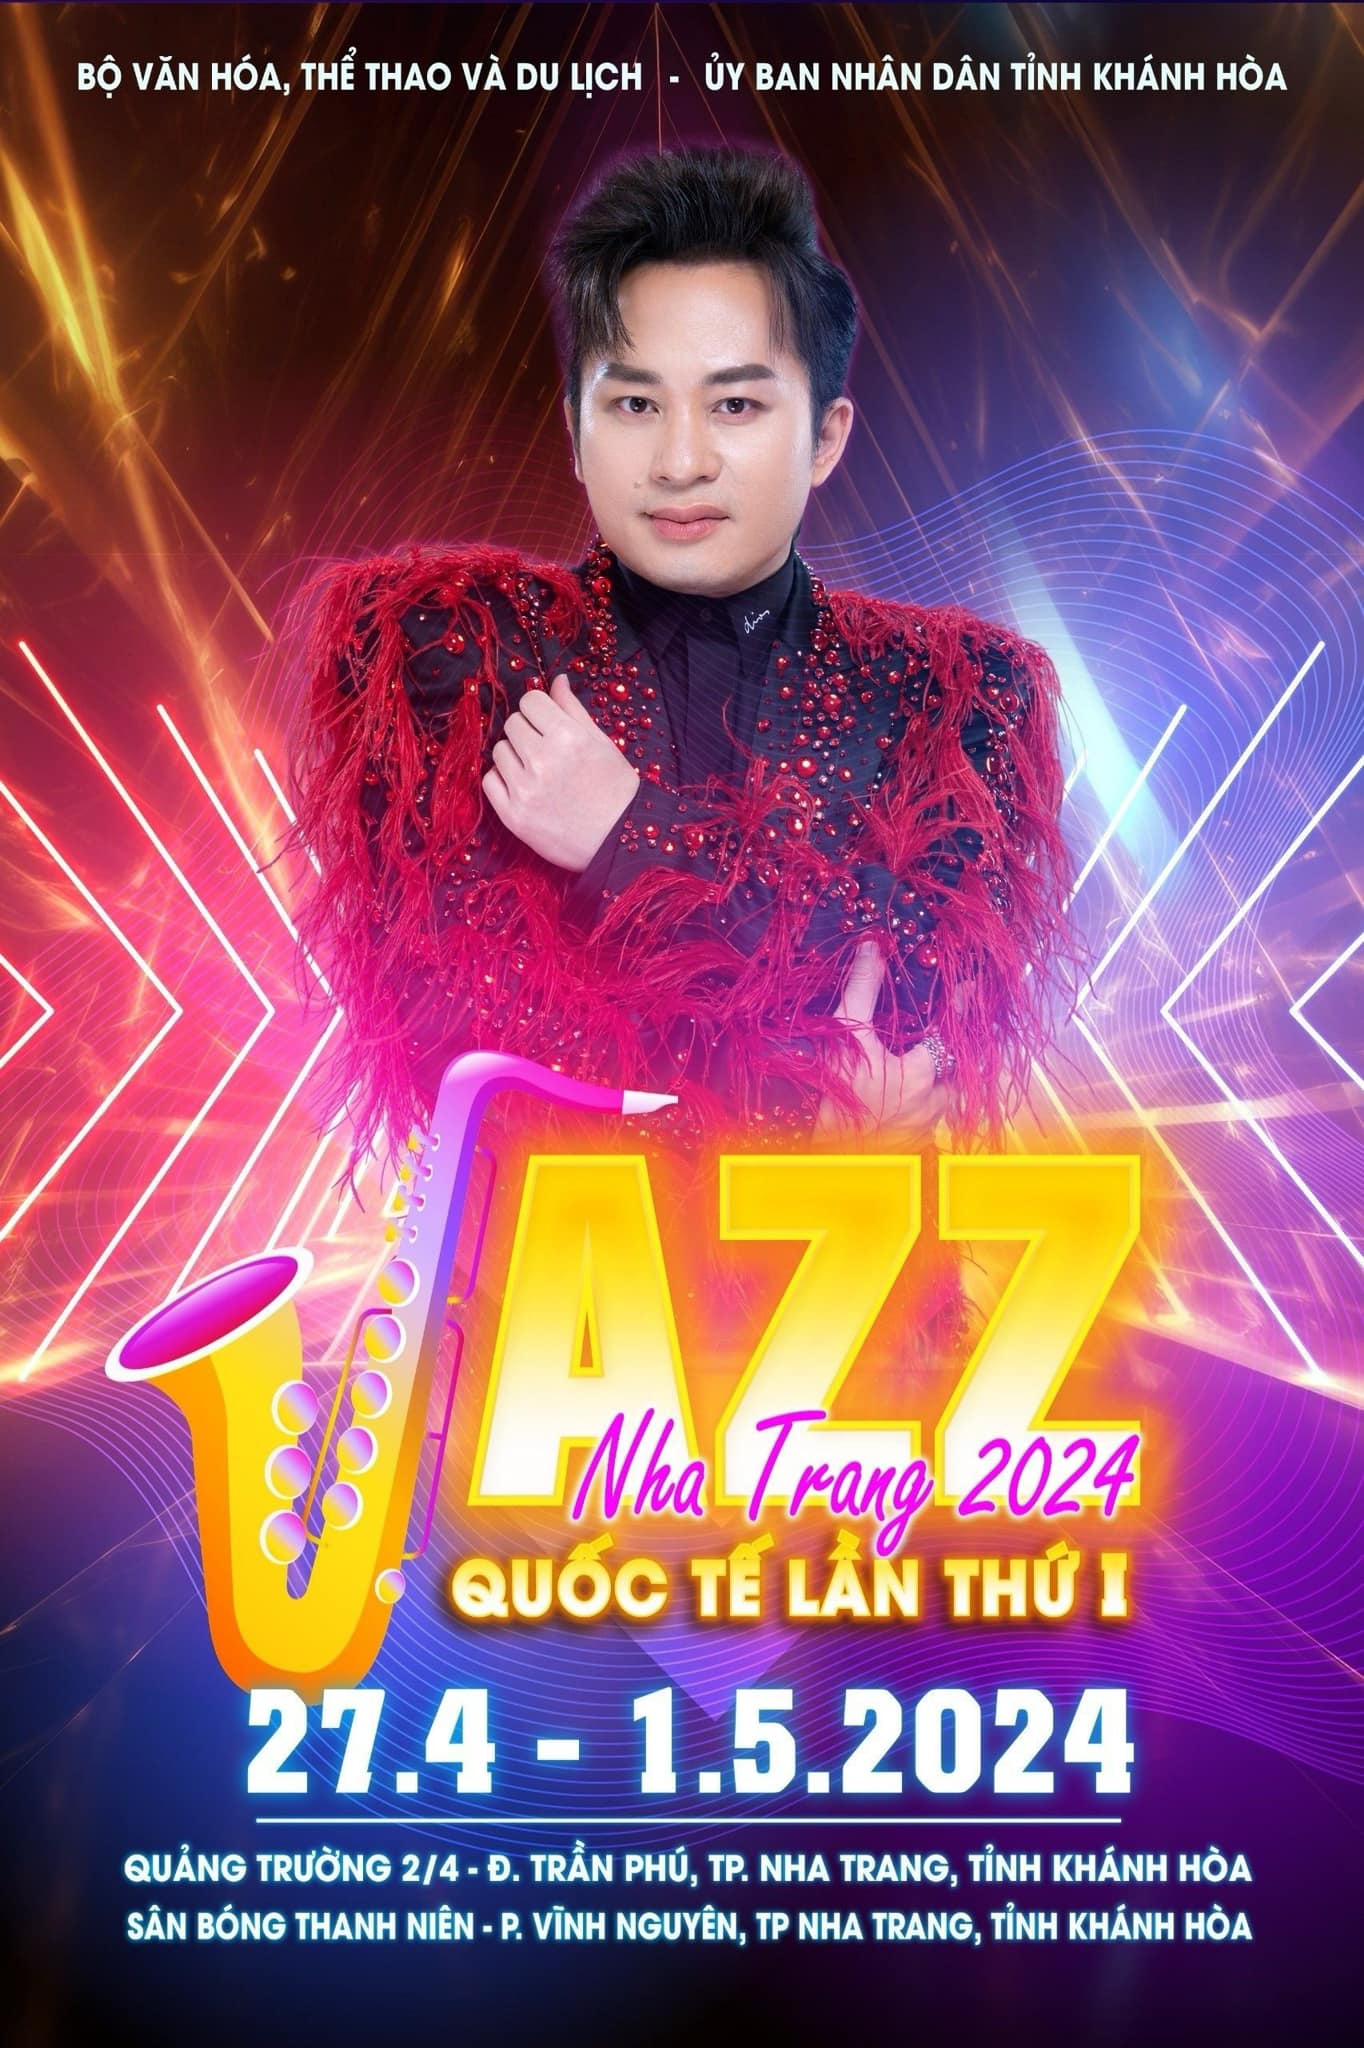 Liên hoan quốc tế nhạc Jazz lần thứ I- Nha Trang 2024: Ca sĩ Tùng Dương mang phong vị Á đông vào Jazz - Ảnh 2.